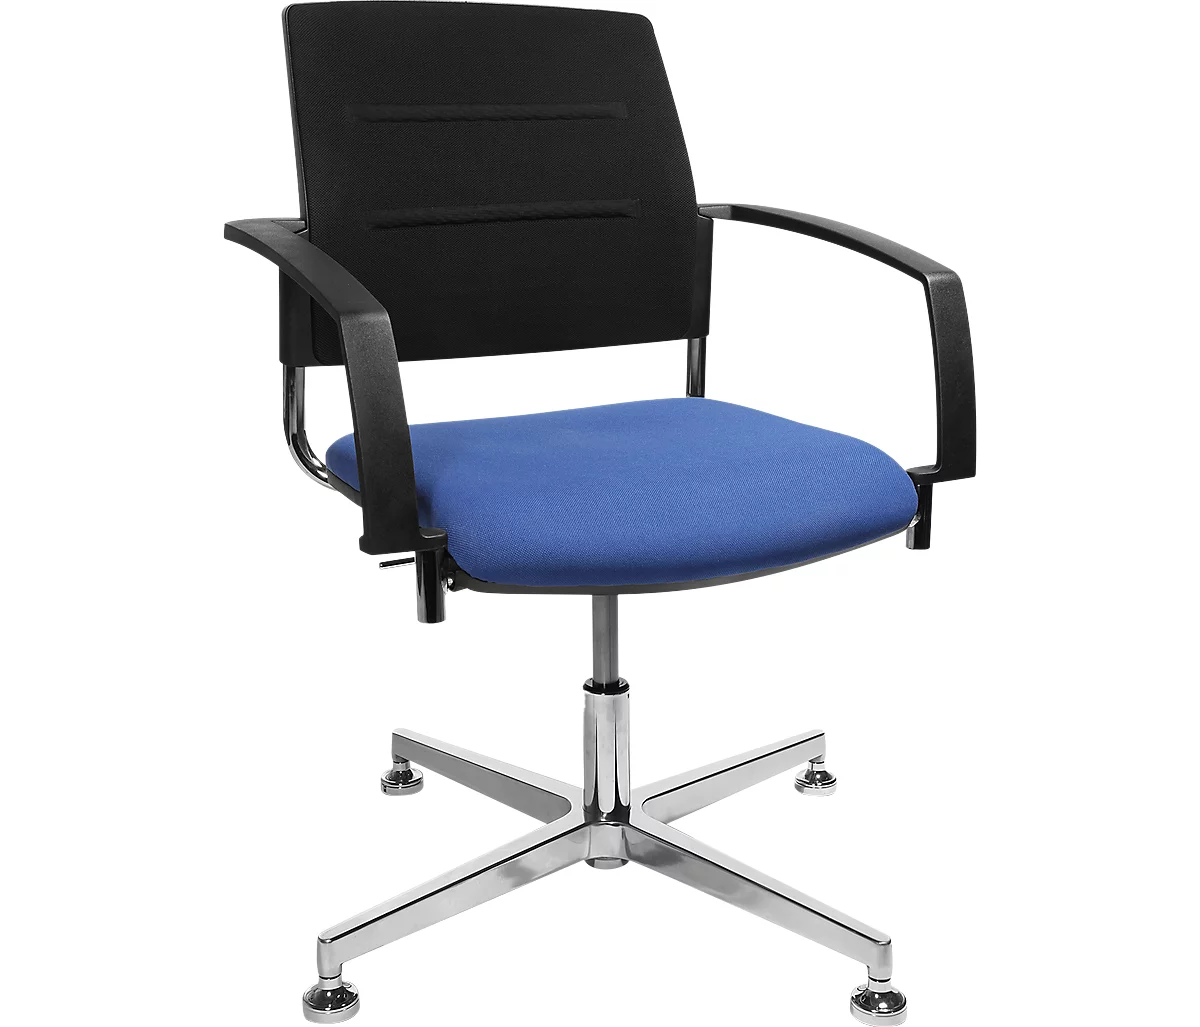 Schäfer Shop Genius Bezoekersstoel SSI Proline Visit S3+, blauw/zwart